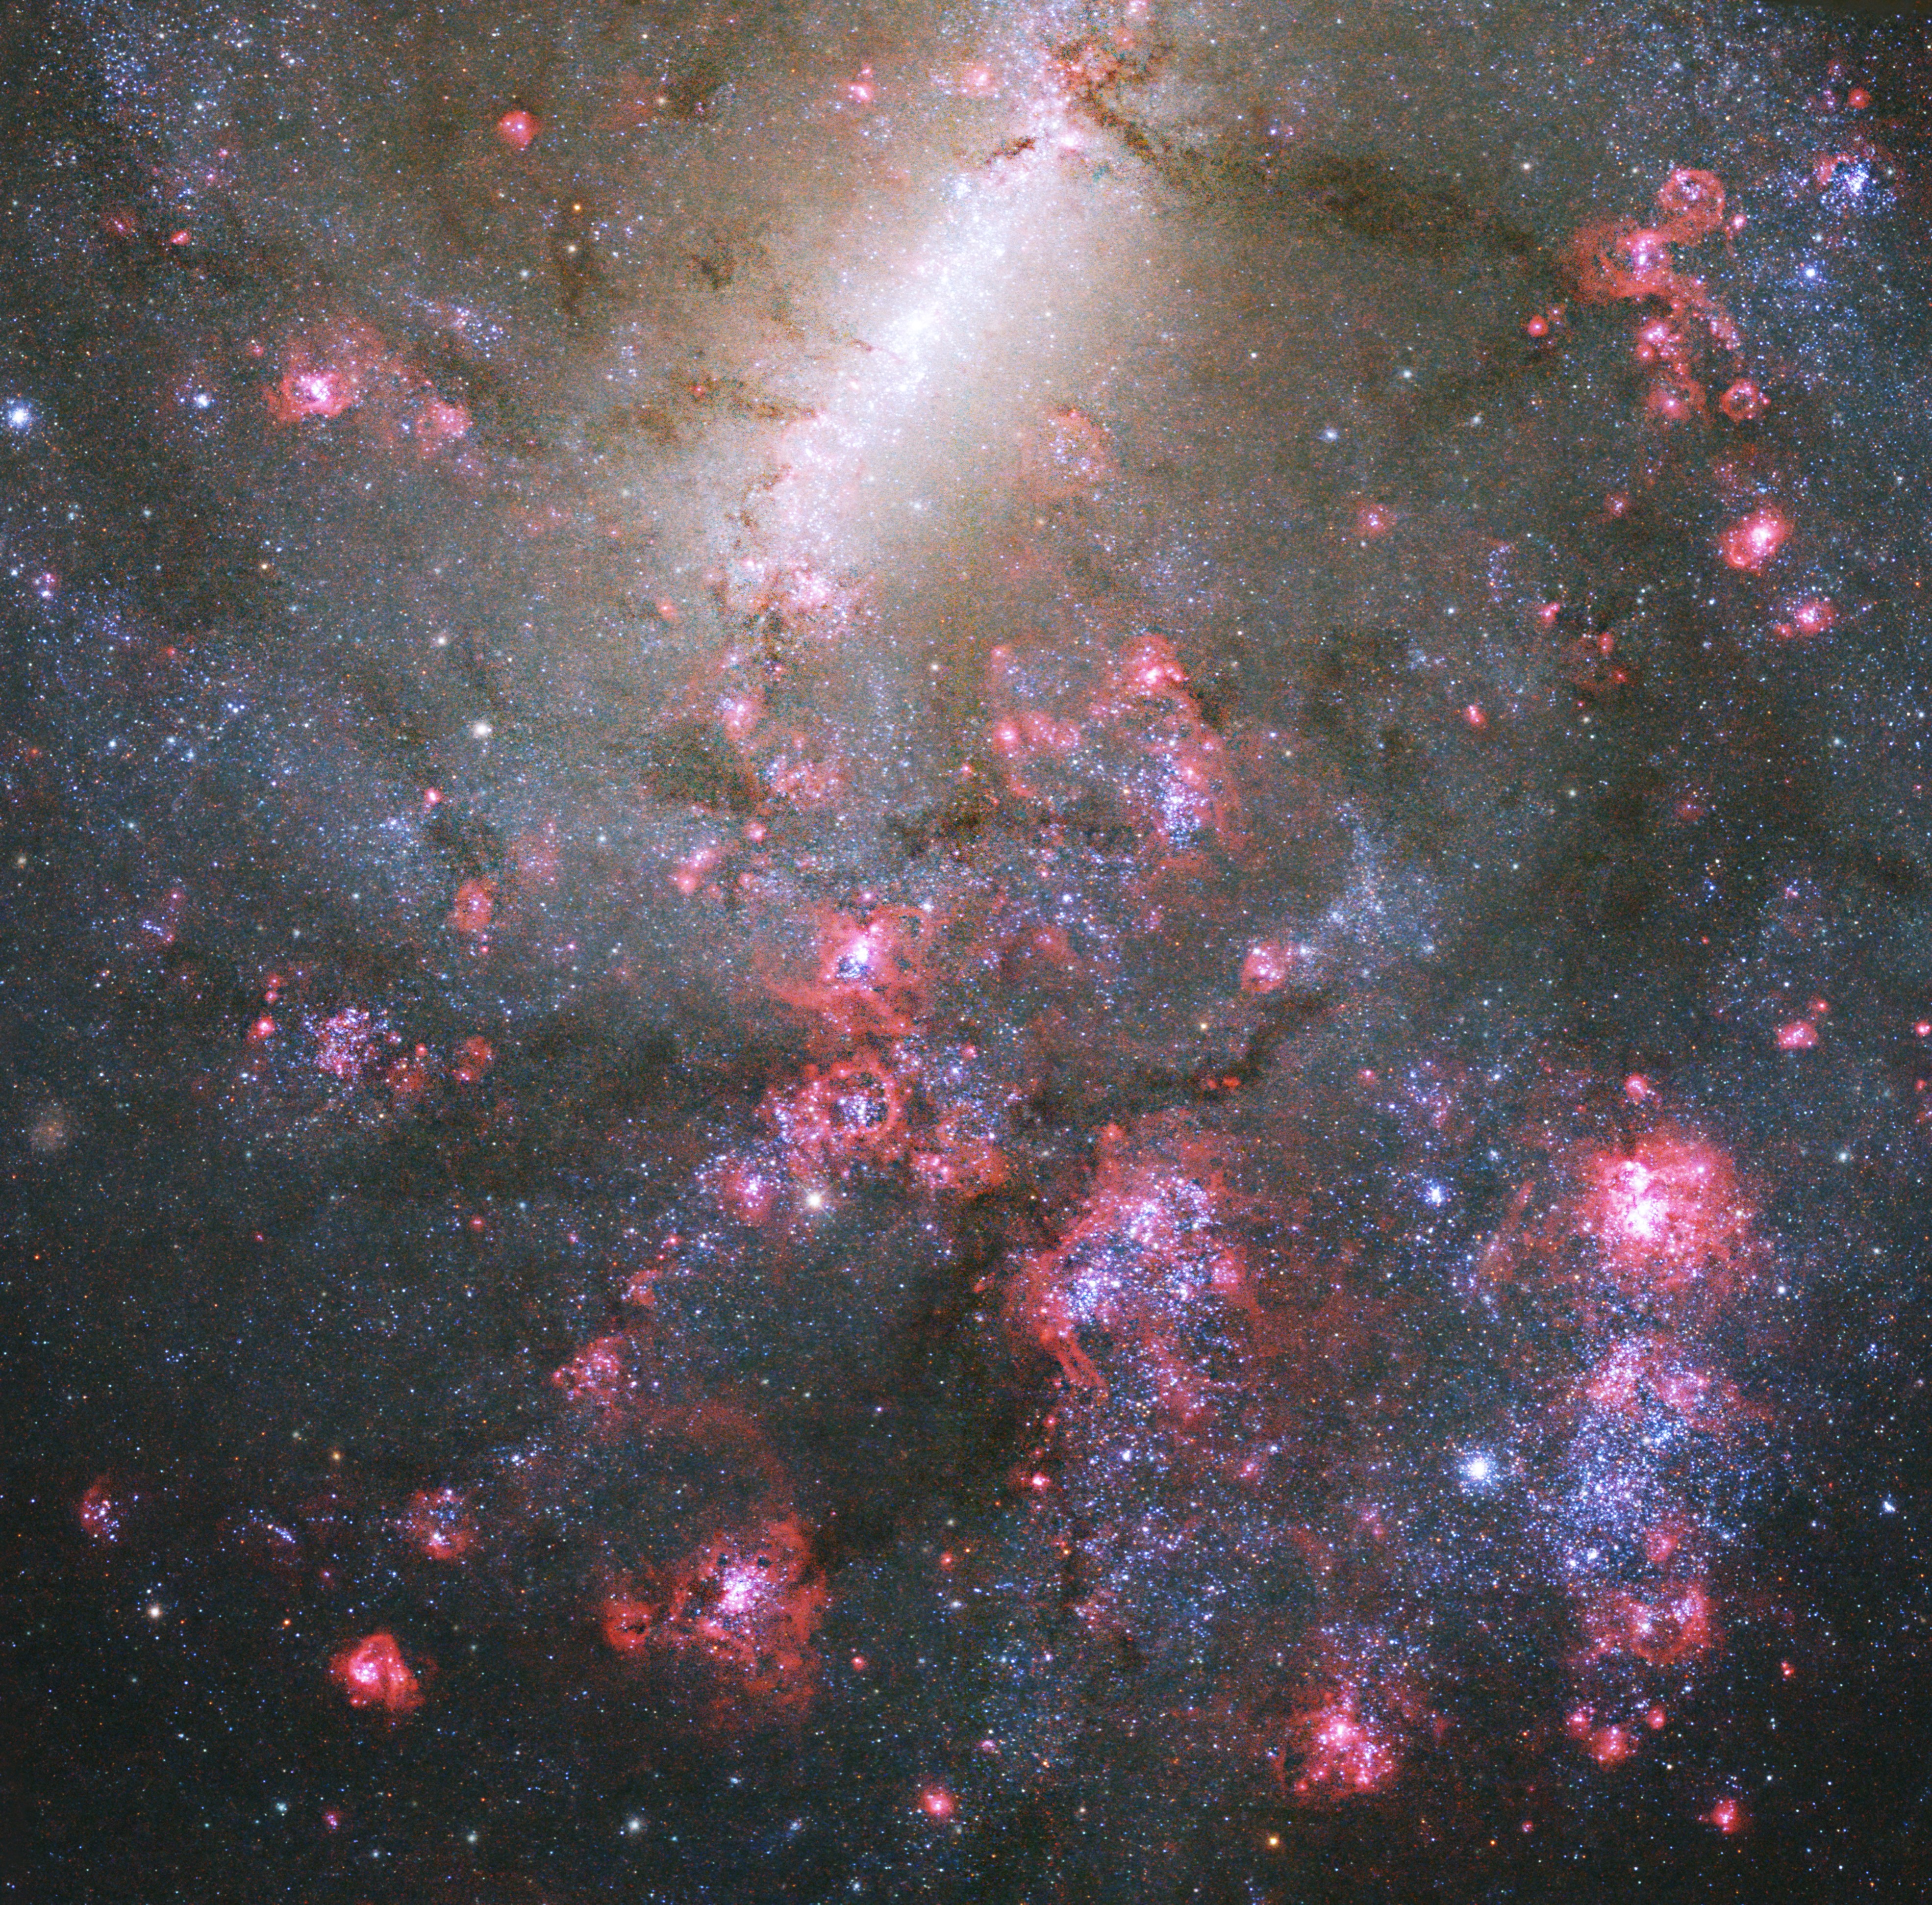 HD 216770 b - NASA Science